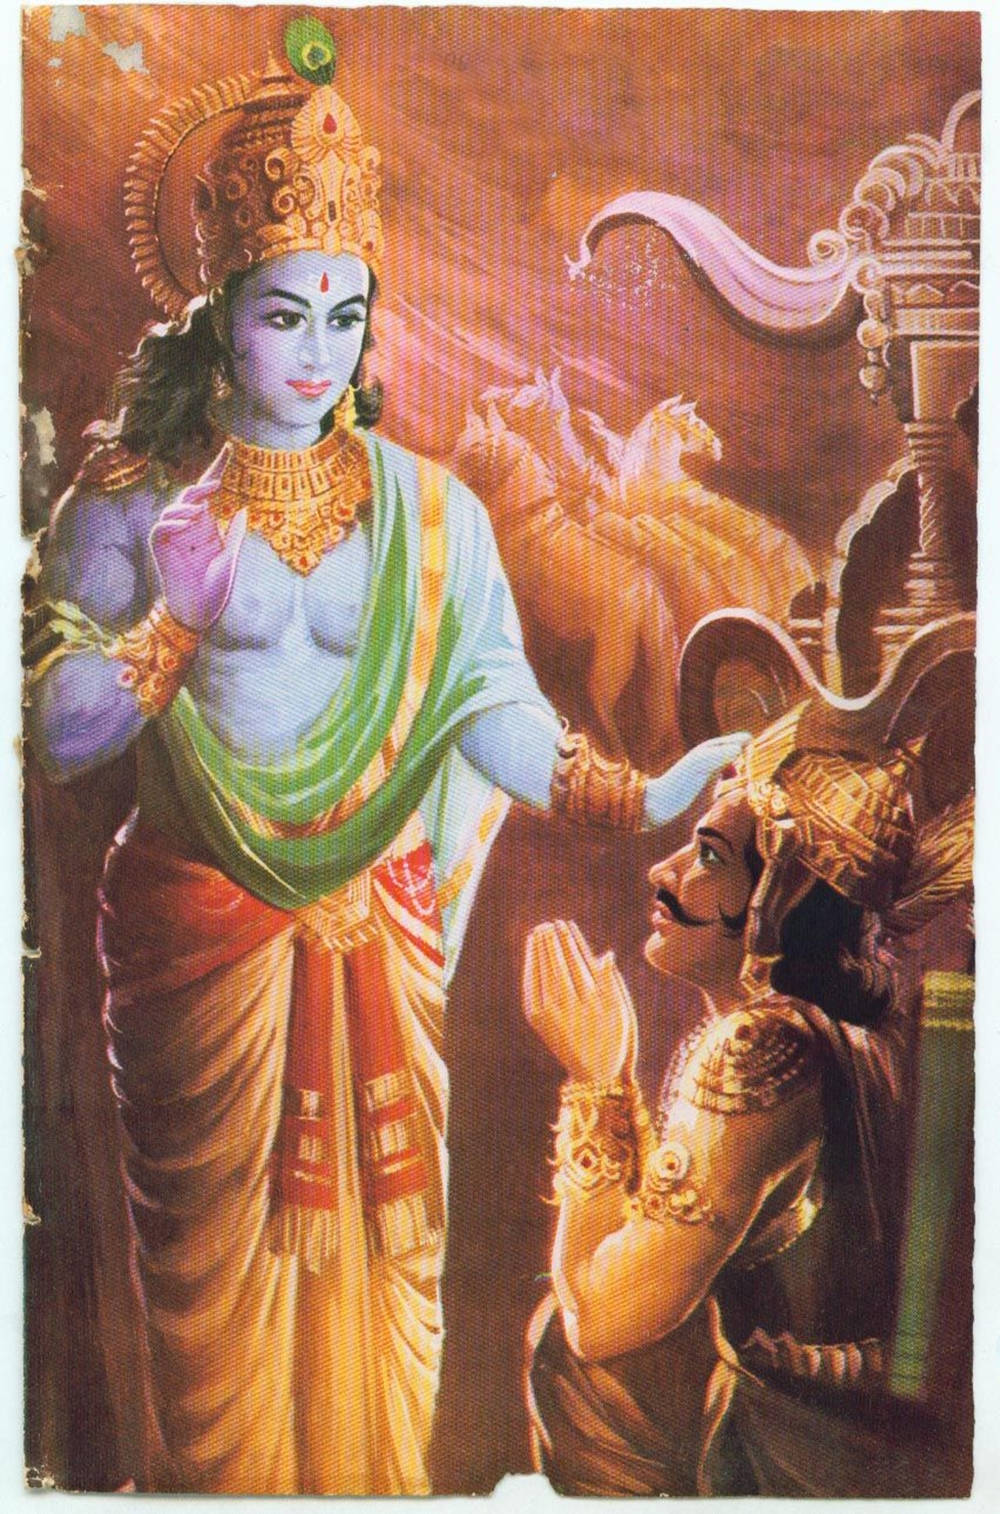 Krishna og Arjun tilbad beskyttelsesgud. Wallpaper